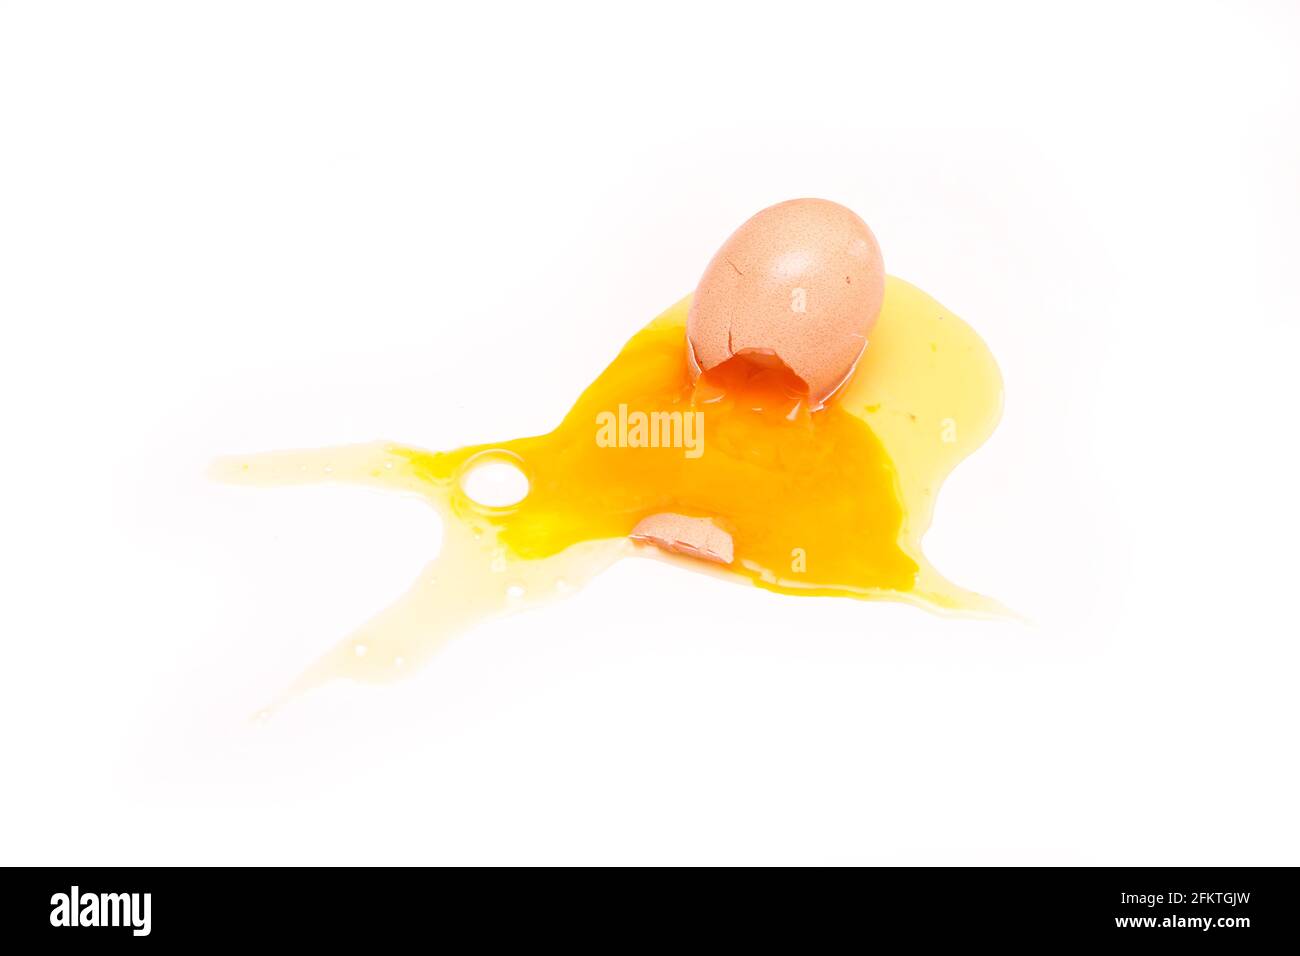 L'œuf biologique déchu est brisé avec la coquille d'œuf écrasée et le jaune d'œuf et le blanc s'écoulant de celui-ci. Banque D'Images